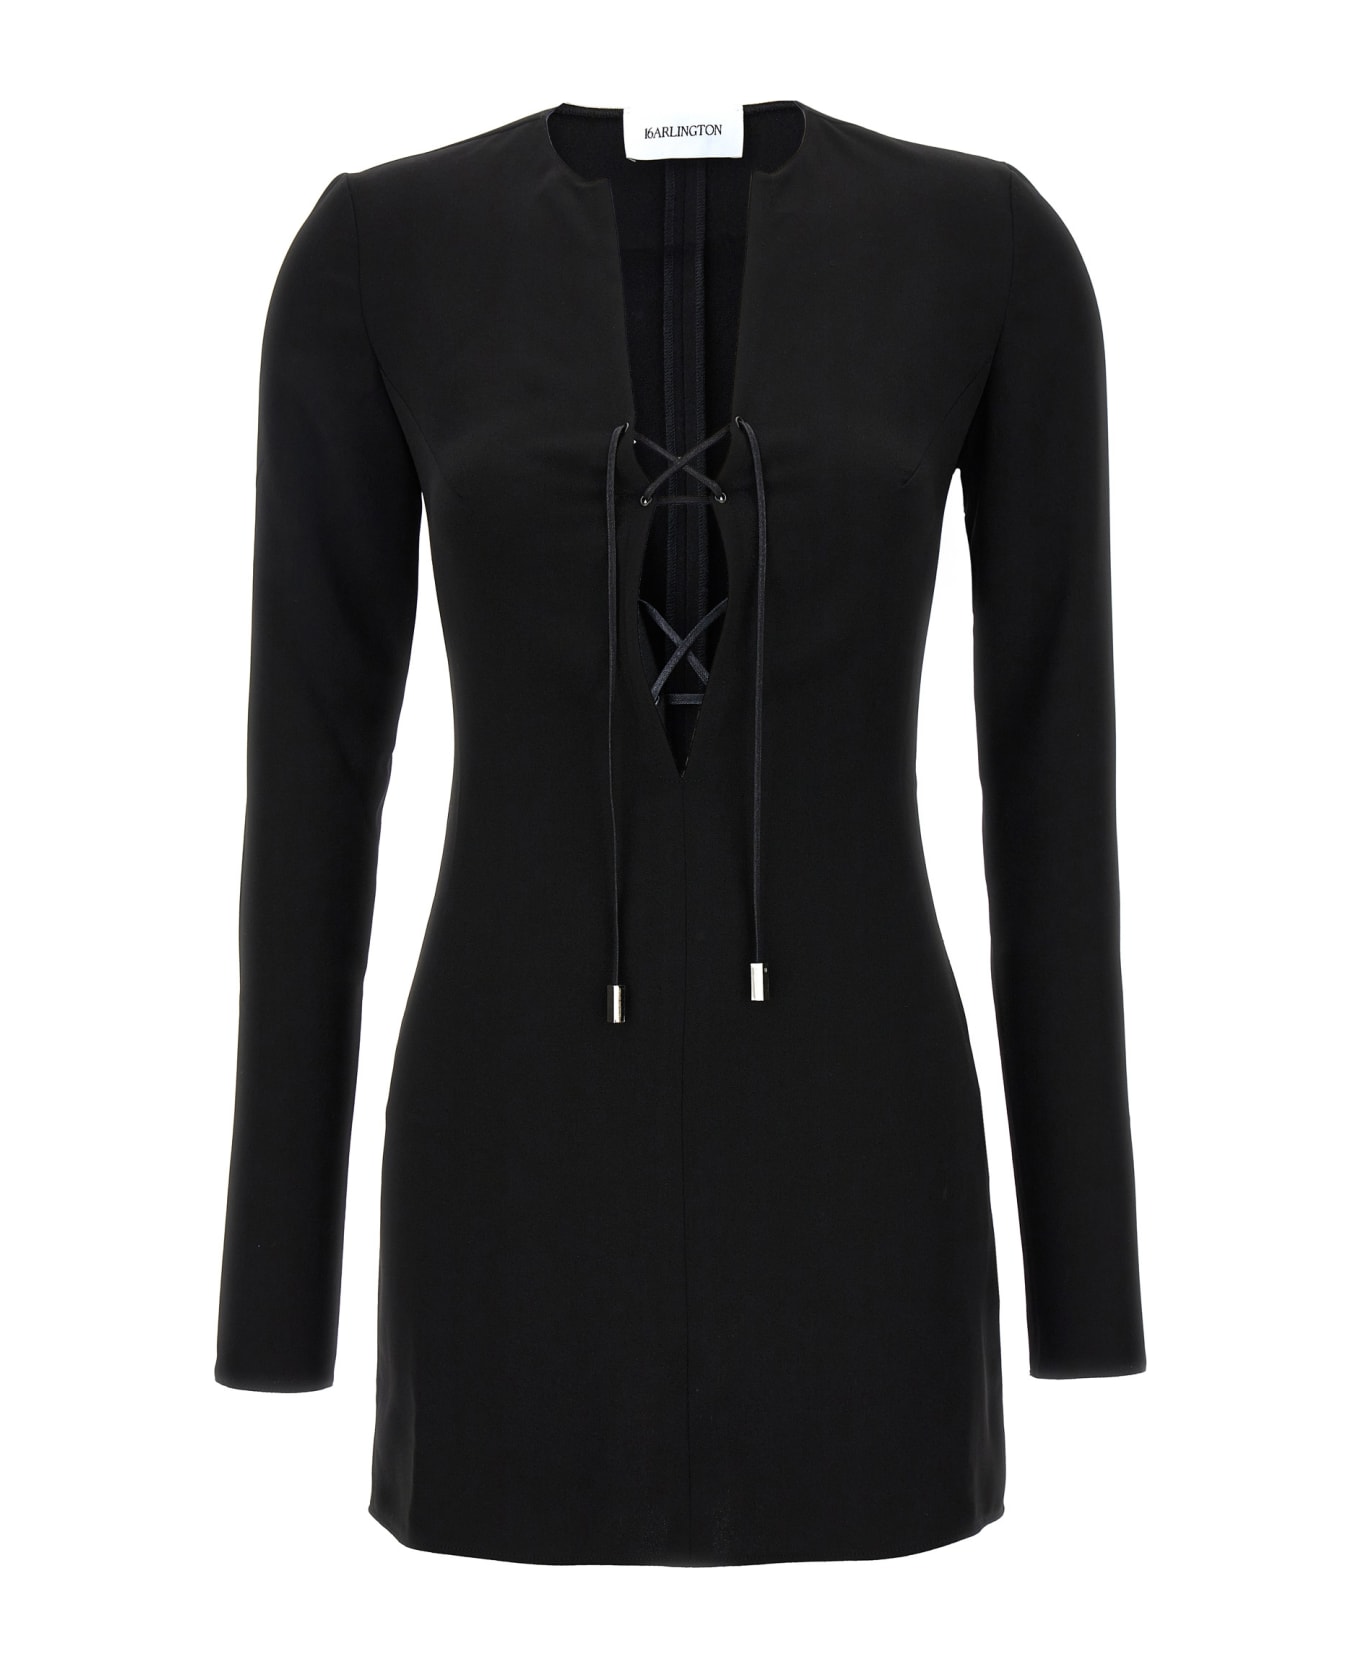 16arlington 'seeran' Dress - Black  